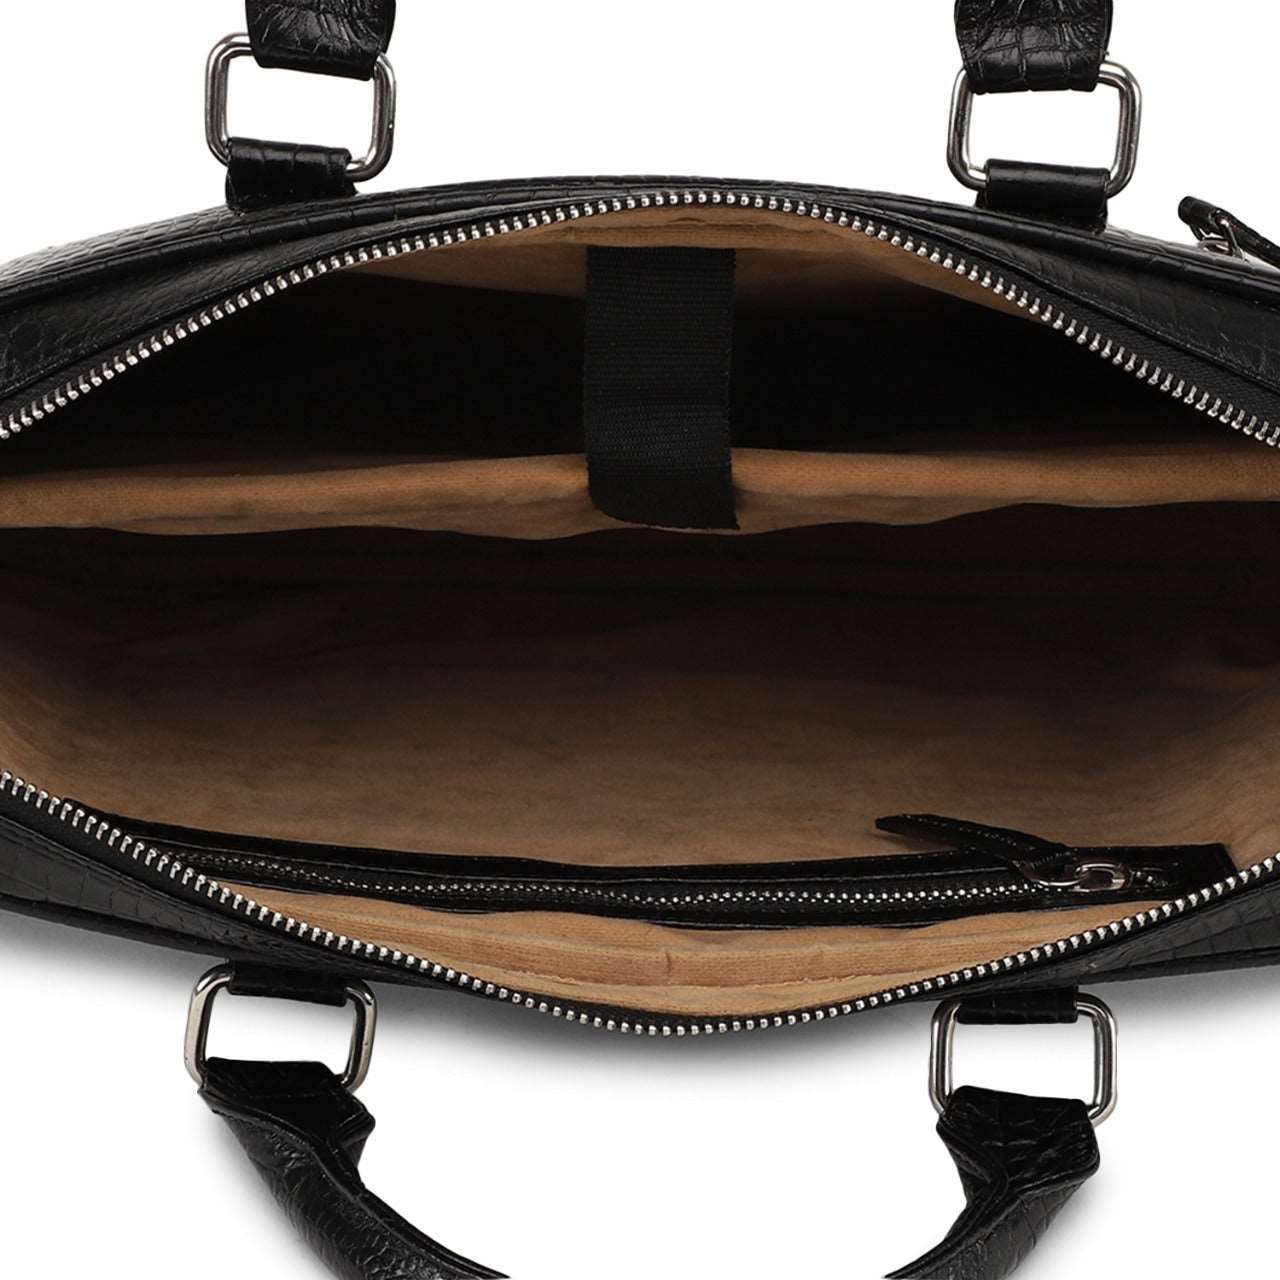 iCruze Delite Leather Bag Black - iCruze